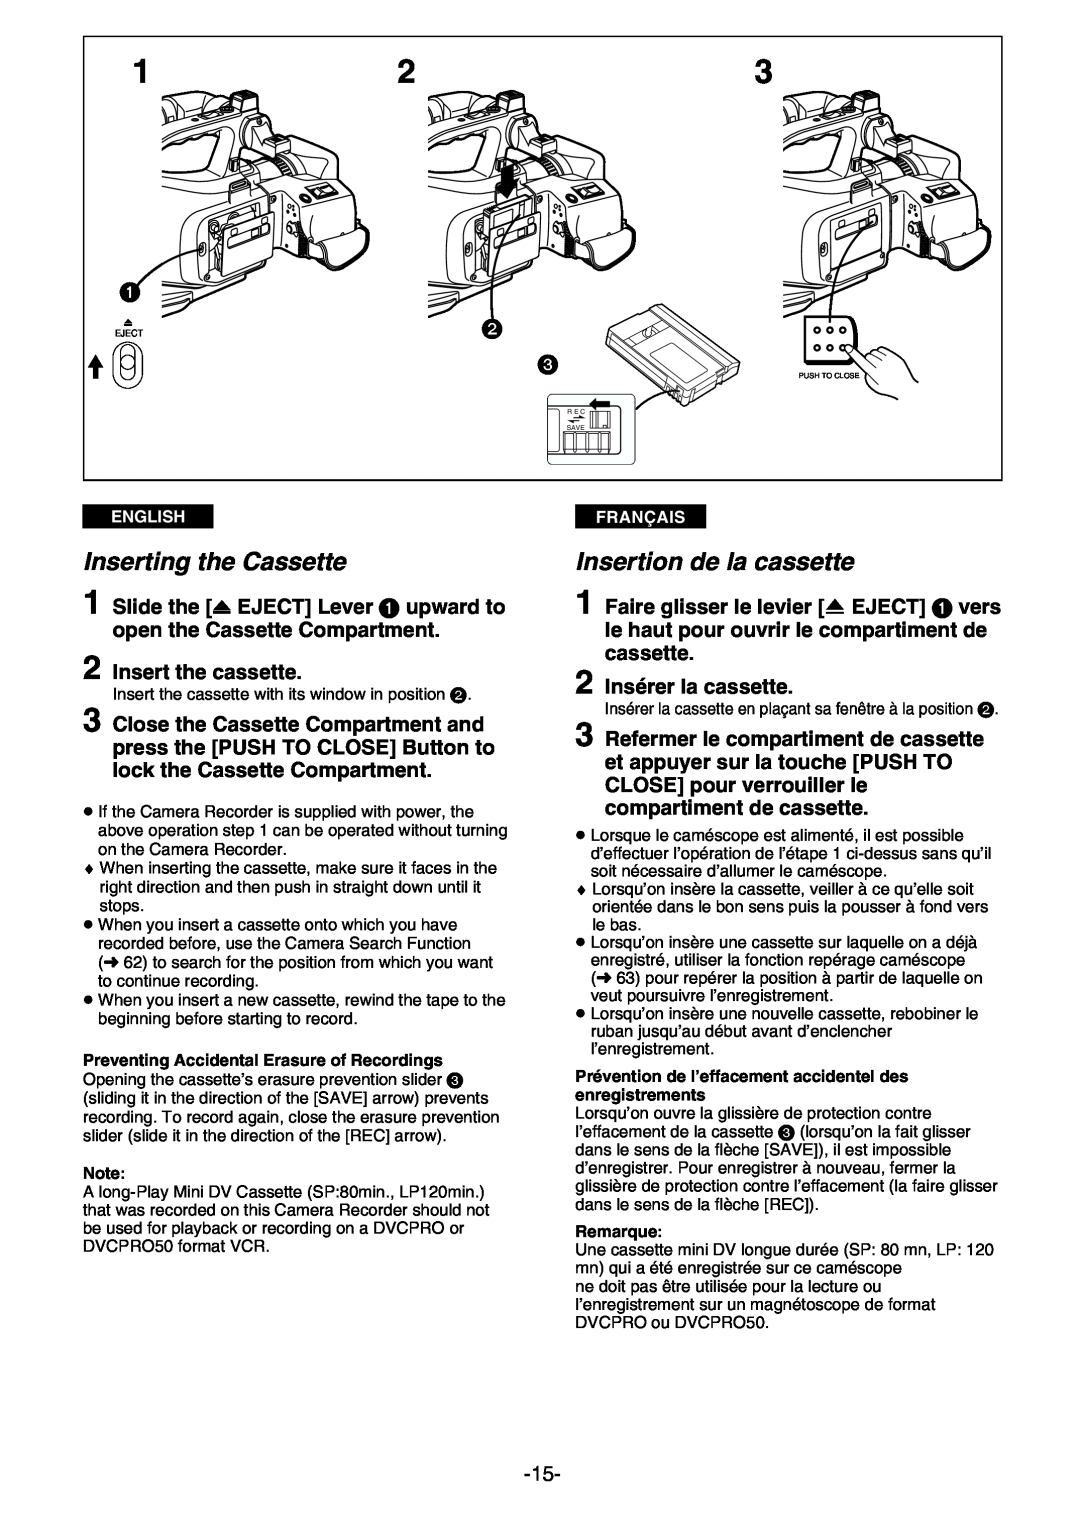 Panasonic AG- DVC 15P manual Inserting the Cassette, Insertion de la cassette, Insert the cassette, 2 Insérer la cassette 